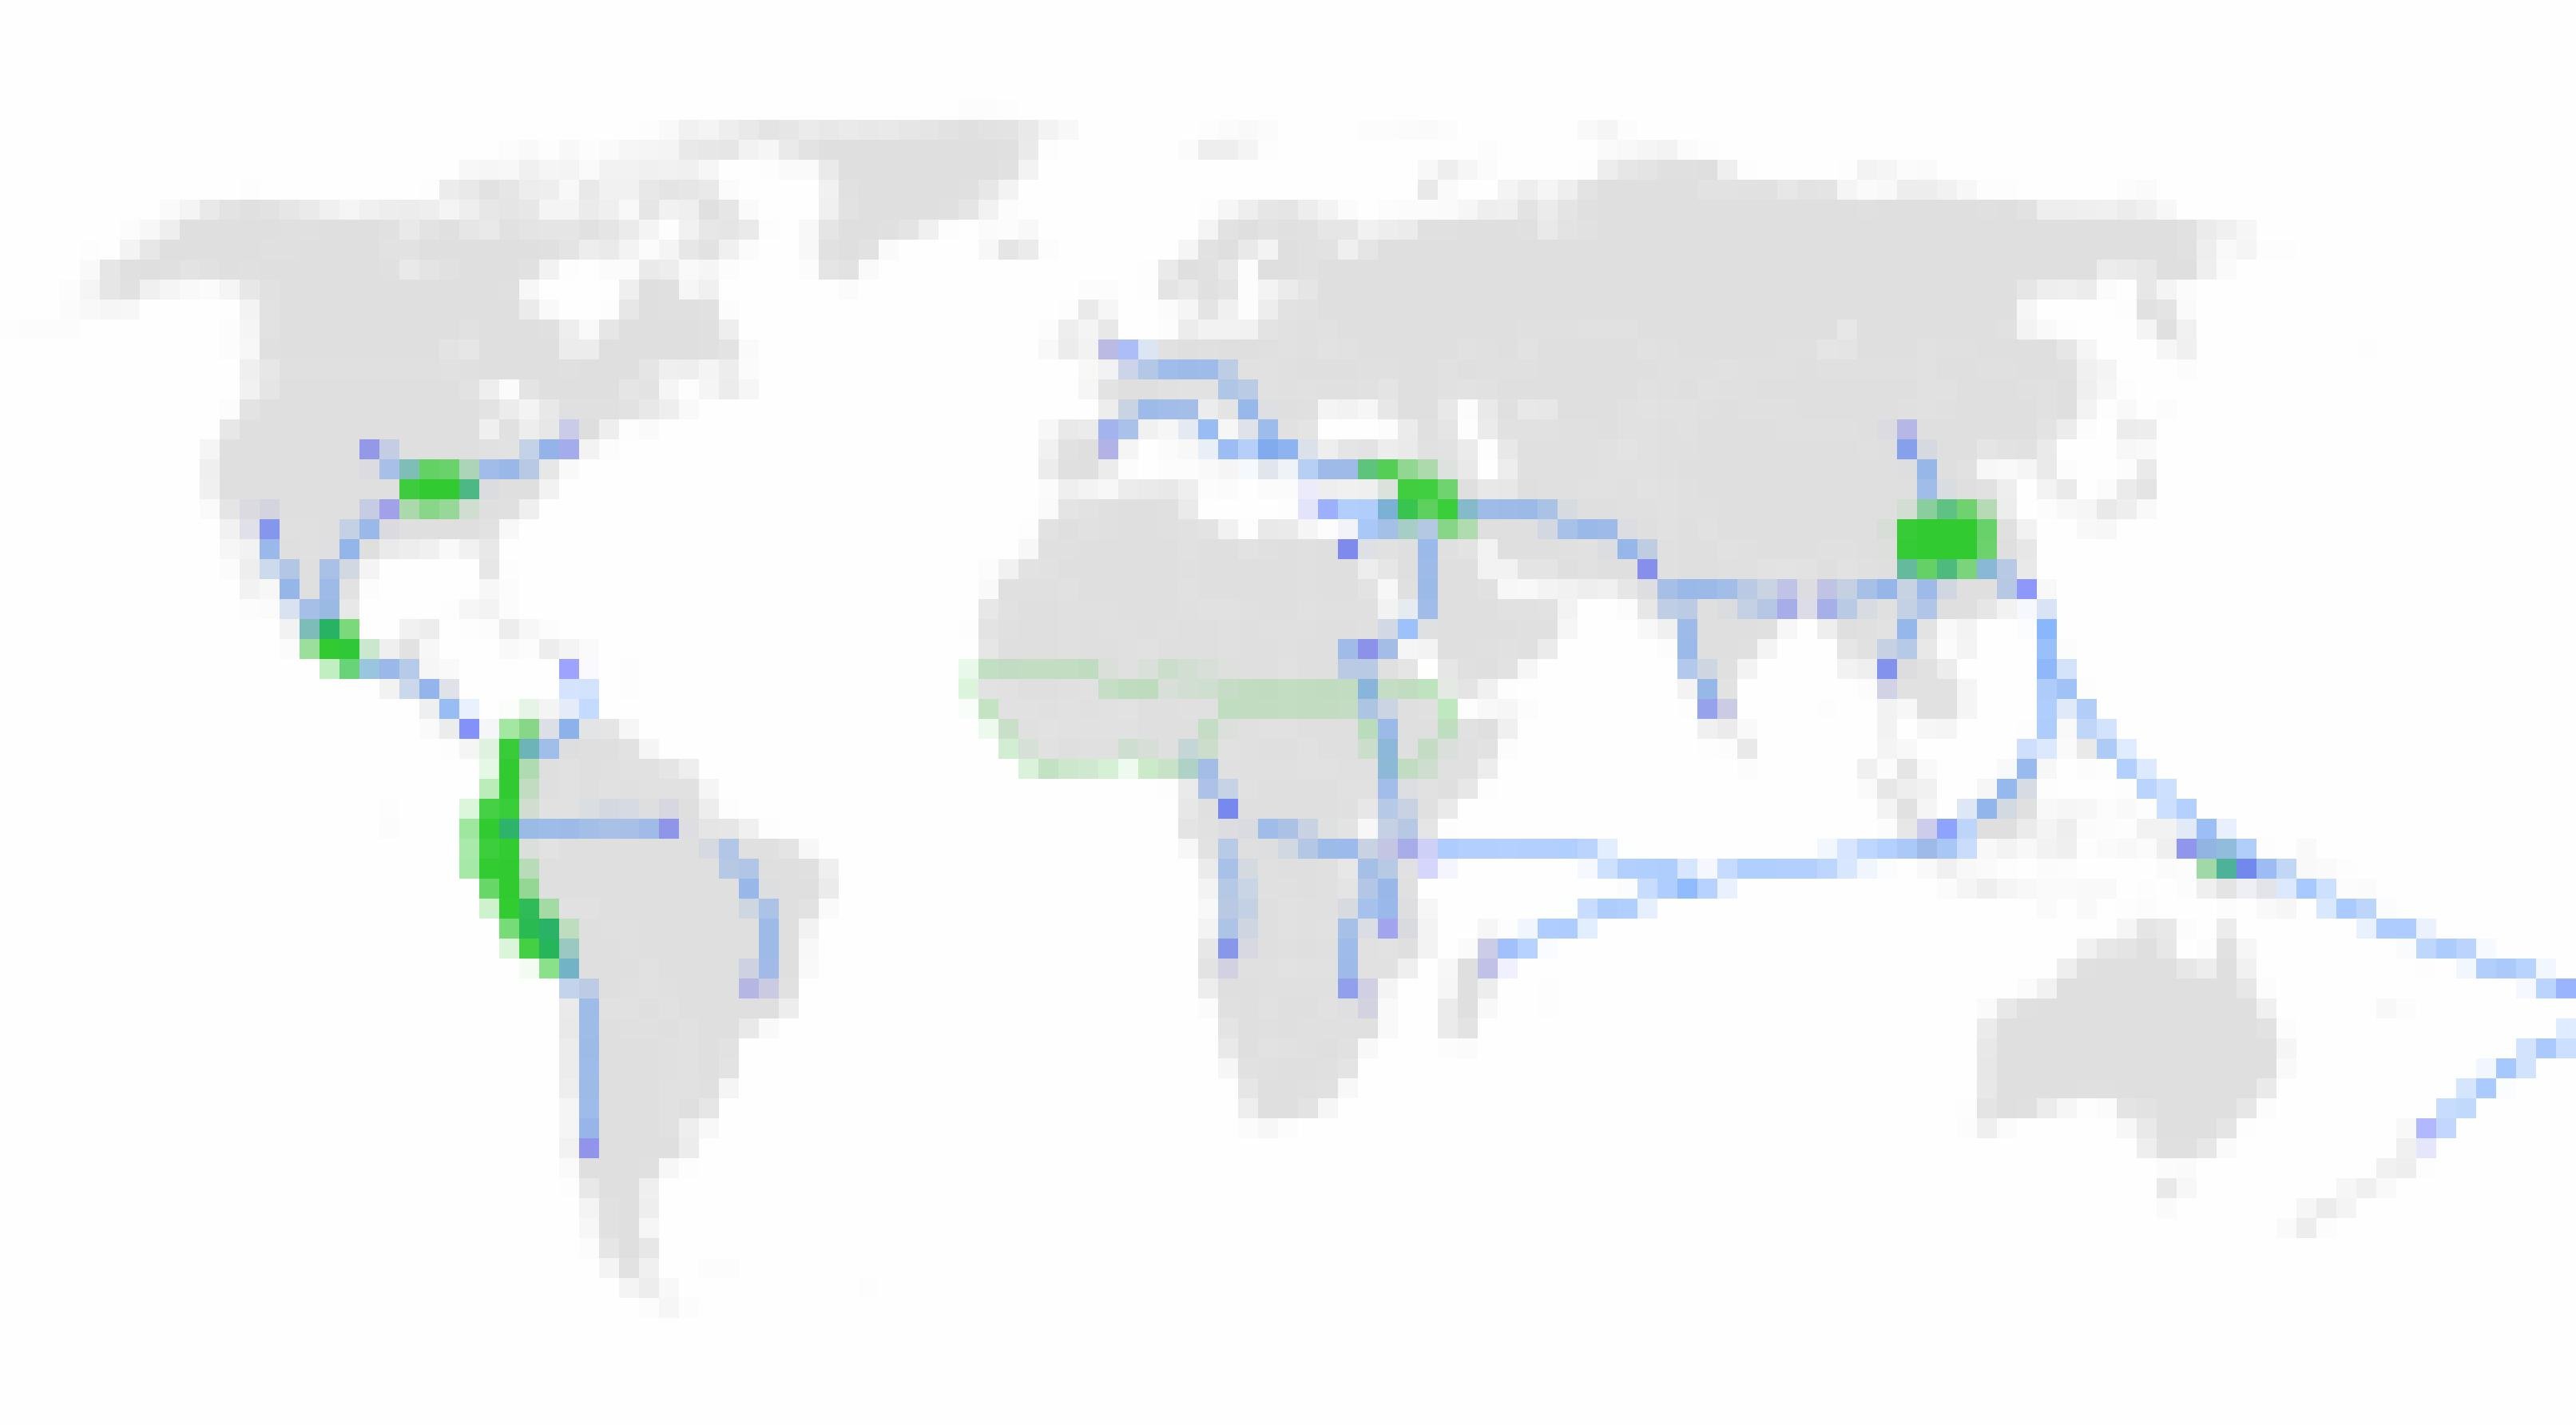 Eine Weltkarte in Grautönen zeigt grün jene Regionen, an denen erstmals Menschen zu Bauern und Viehzüchtern wurden: Den Nahen Osten, Zentralchina, Stellen in Nord-, Mittel- und Südamerika. Blaue Pfeile zeigen die Verbreitung der neuen Lebensweise über die Erde.